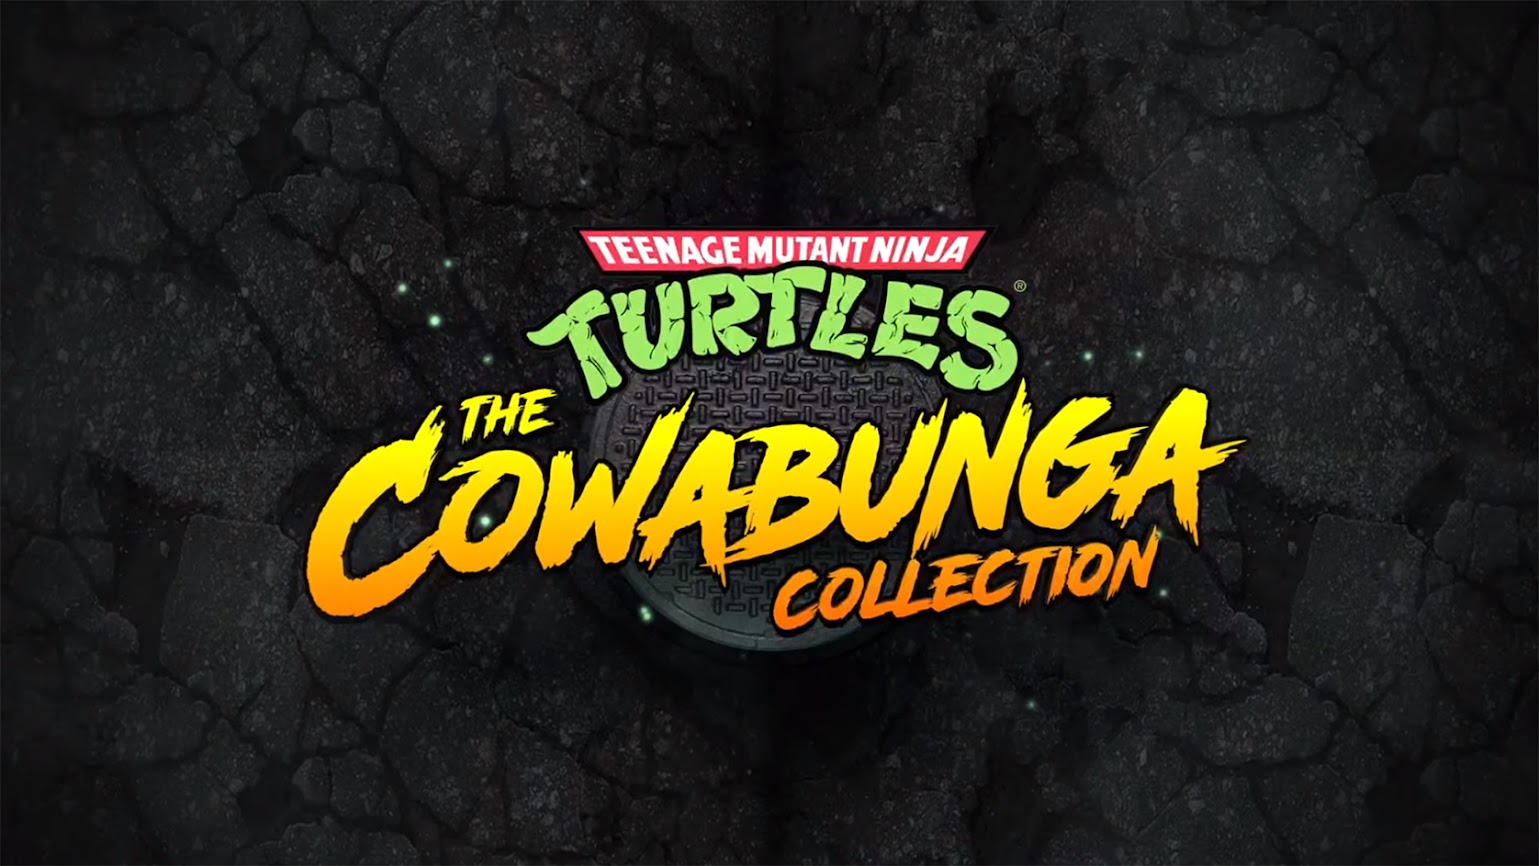 Cowabunga Revealed Collection Teenage Turtles: Mutant The Ninja